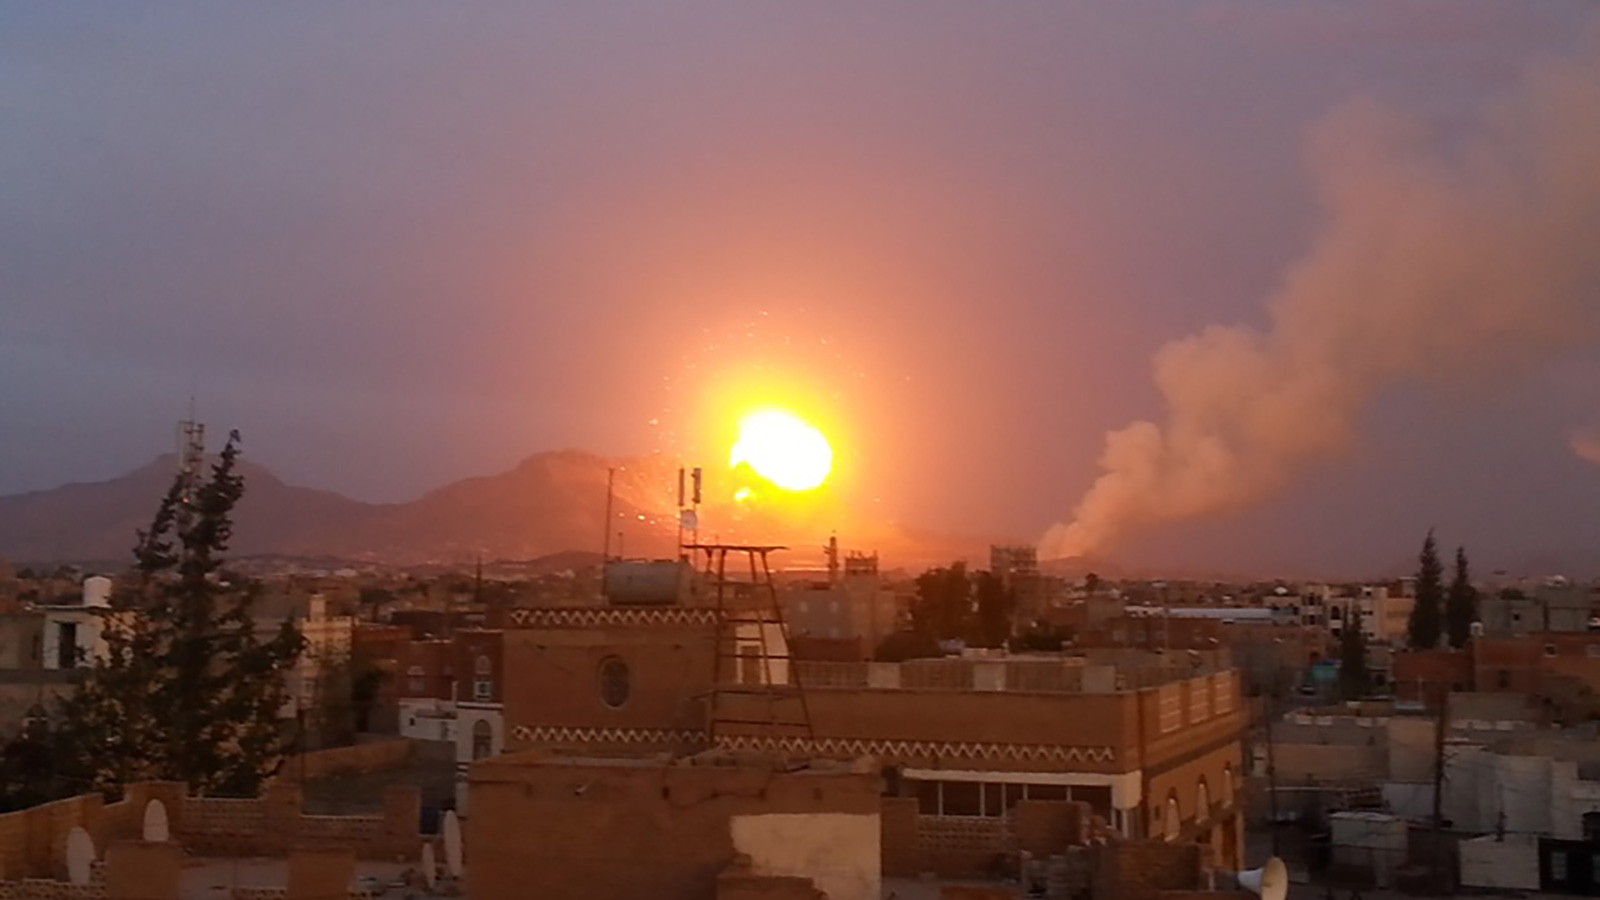 أشدُّ ما يُحزنني أن اليمن السعيد لم يَسلم من القصف حتى في أول ليالي رمضان، ويكأن هذه الصواريخ المتساقطة على رؤوسنا هدية من إخواننا العرب والمسلمين